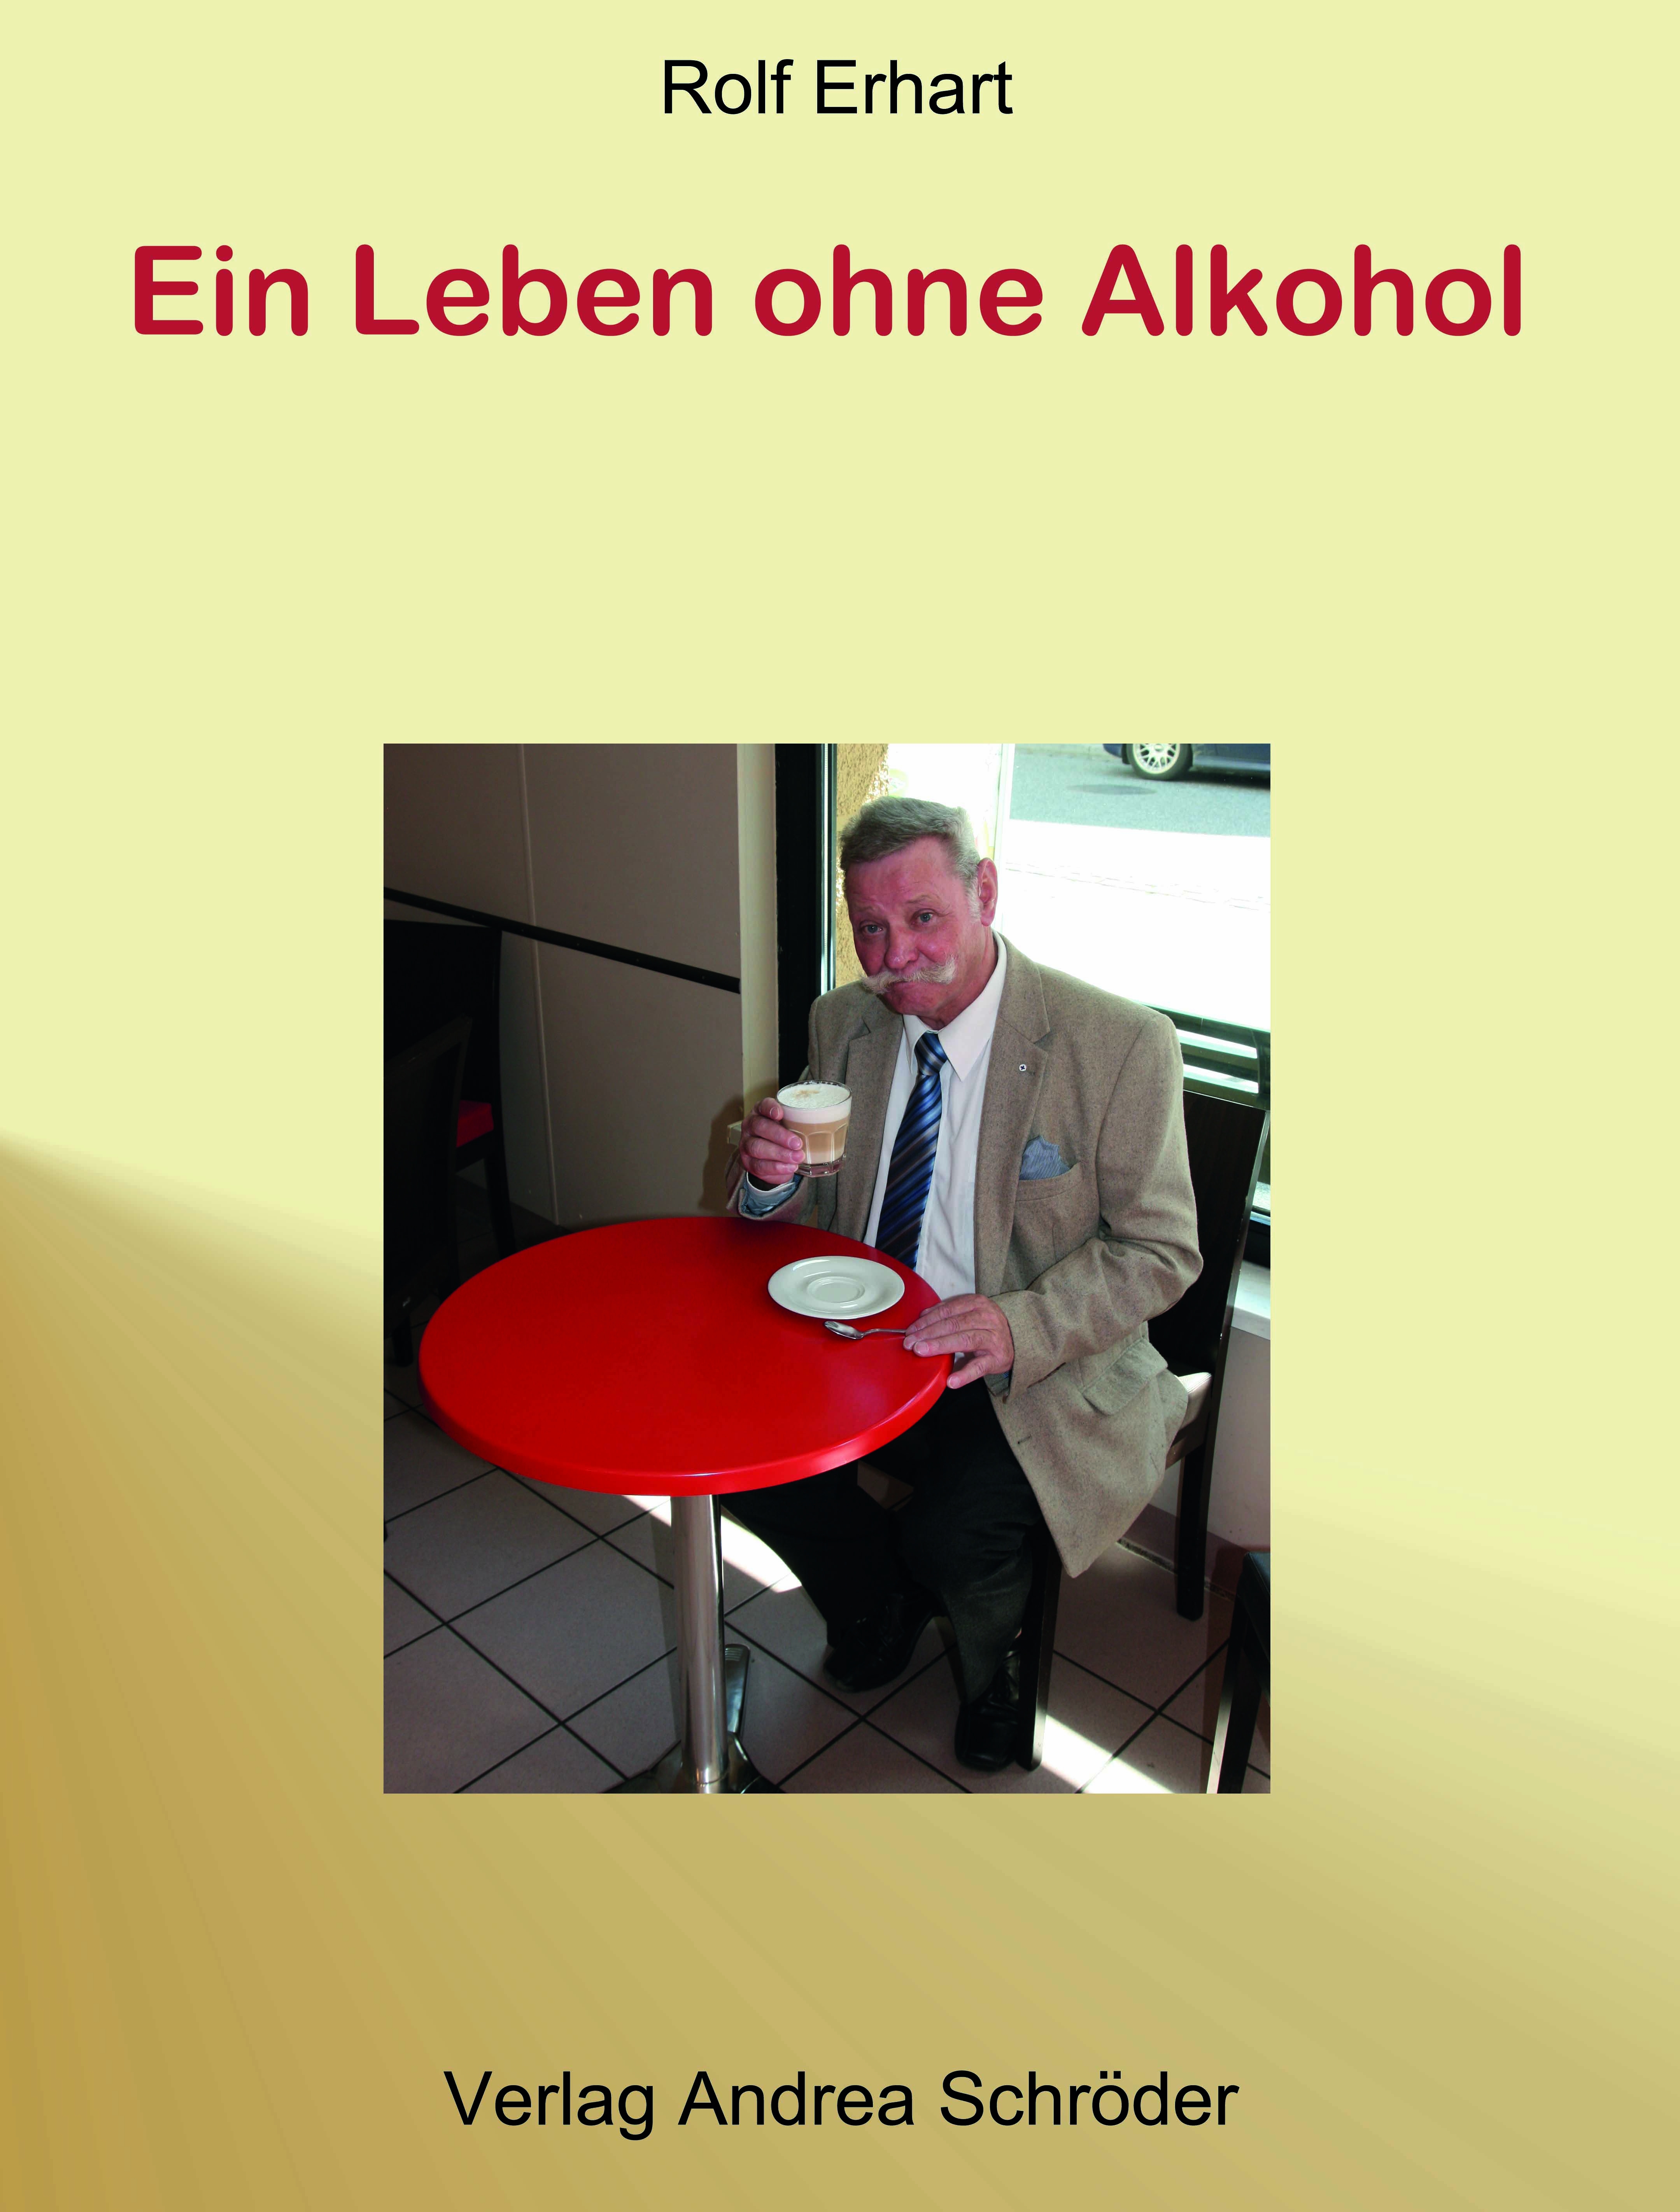 NEU Ein Leben ohne Alkohol Rolf Erhart 990156 - Picture 1 of 1